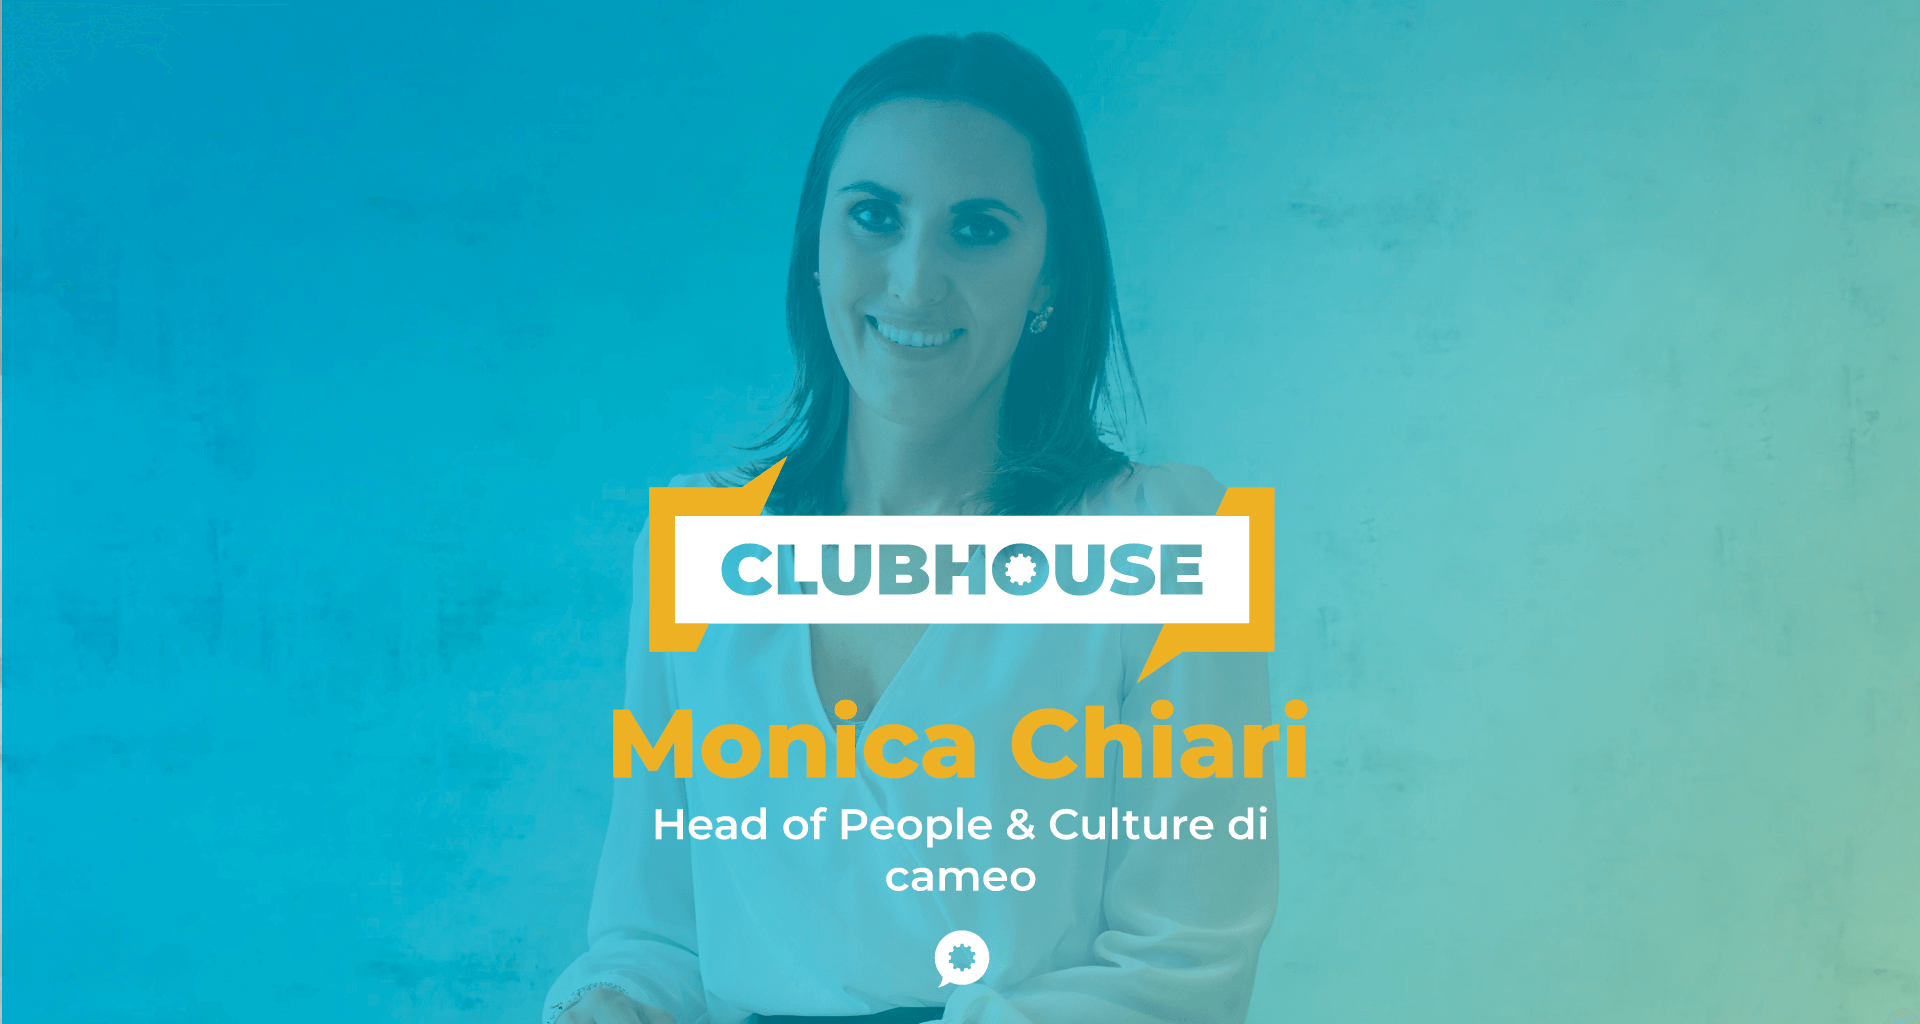 img 1: “Monica Chiari di cameo, ospite del ClubHouse di laborability”